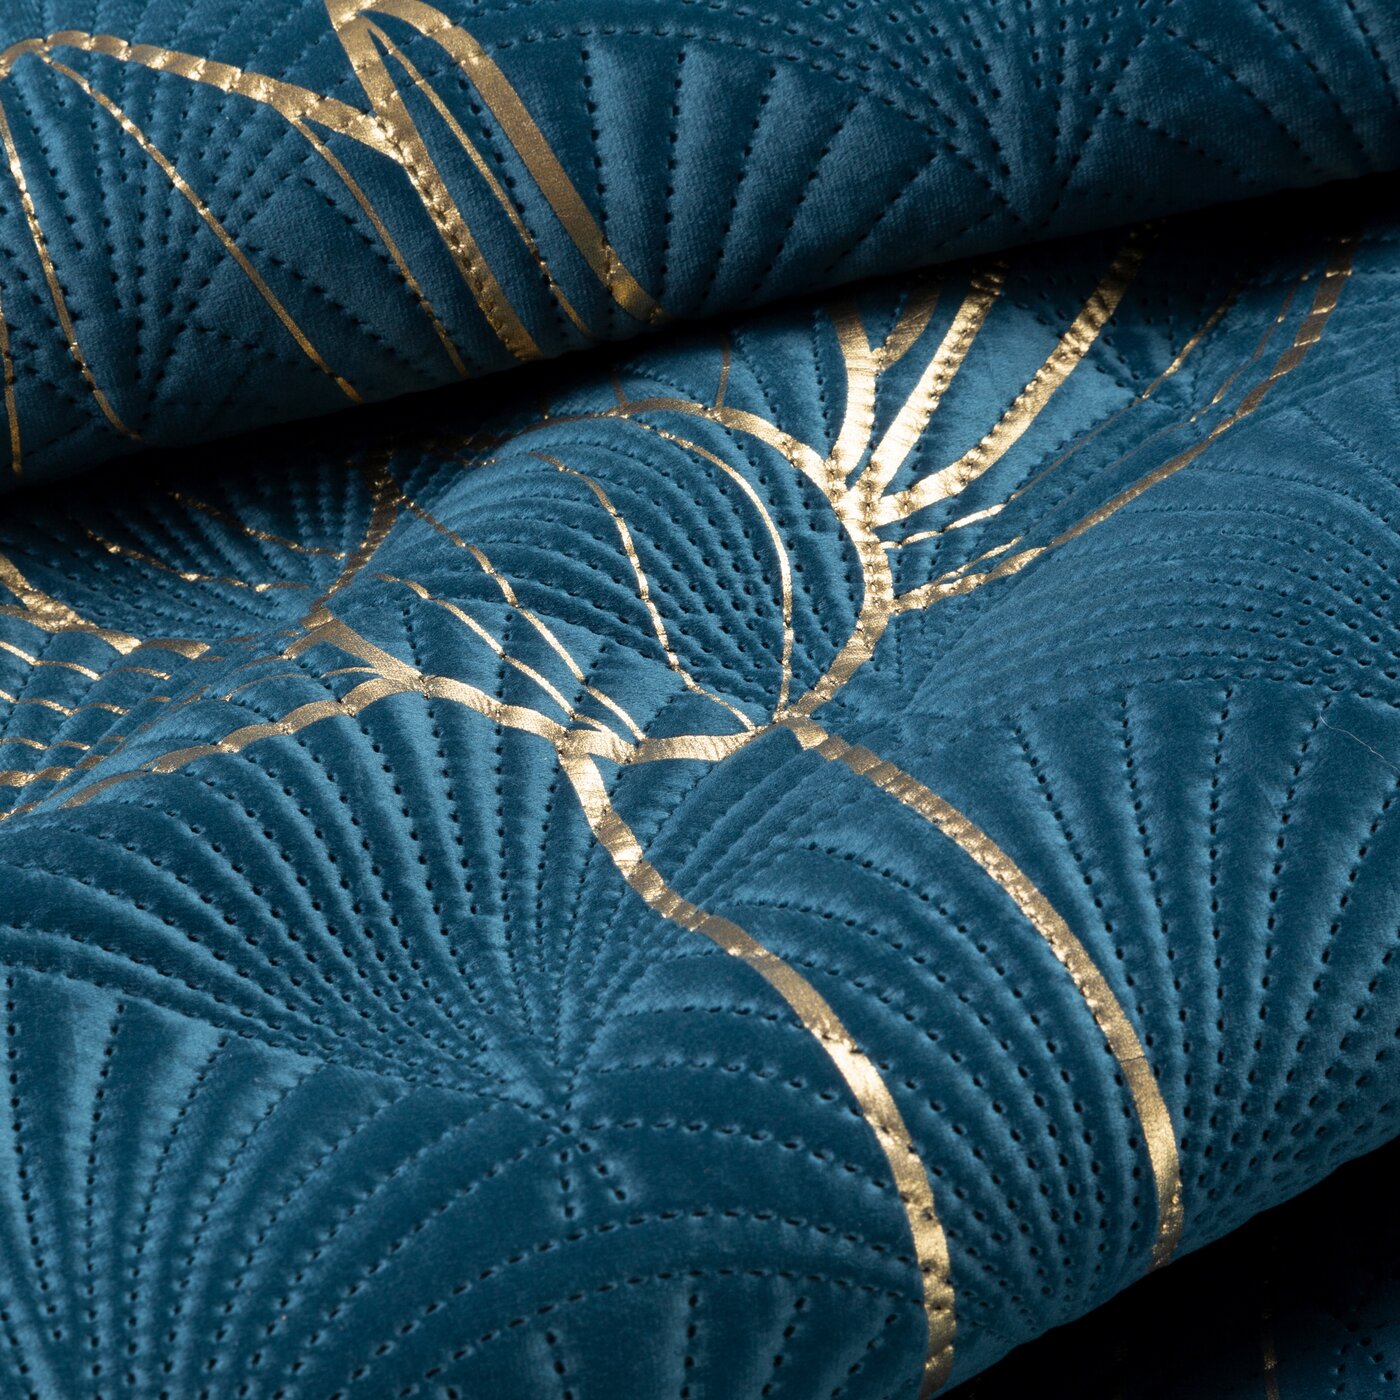 Cuvertură de Pat cu imprimeu auriu flori de lotus, matlasare prin presare la cald bleumarin auriu Colecția Limitată LOTOS 7 Perdele de Poveste